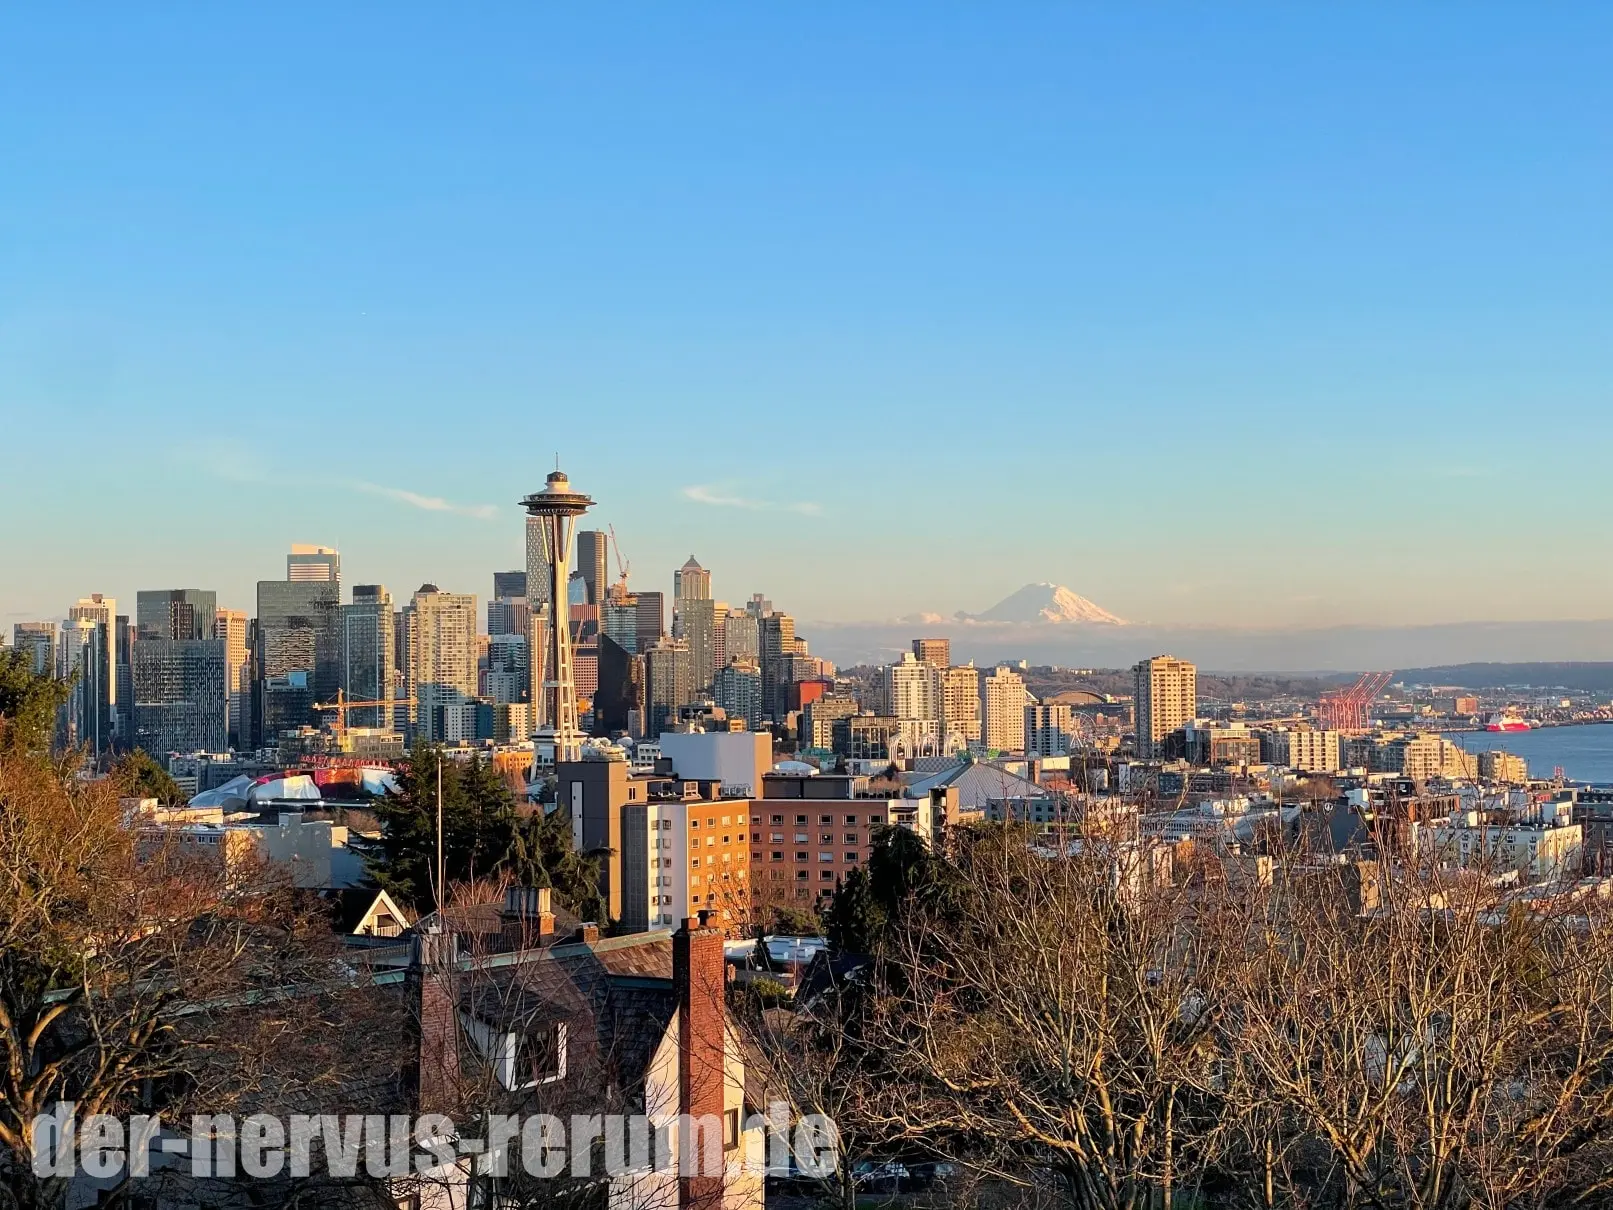 Seattle erkunden: Aktivitäten, Hotel & Zugfahrt nach Vancouver (Reisebericht)